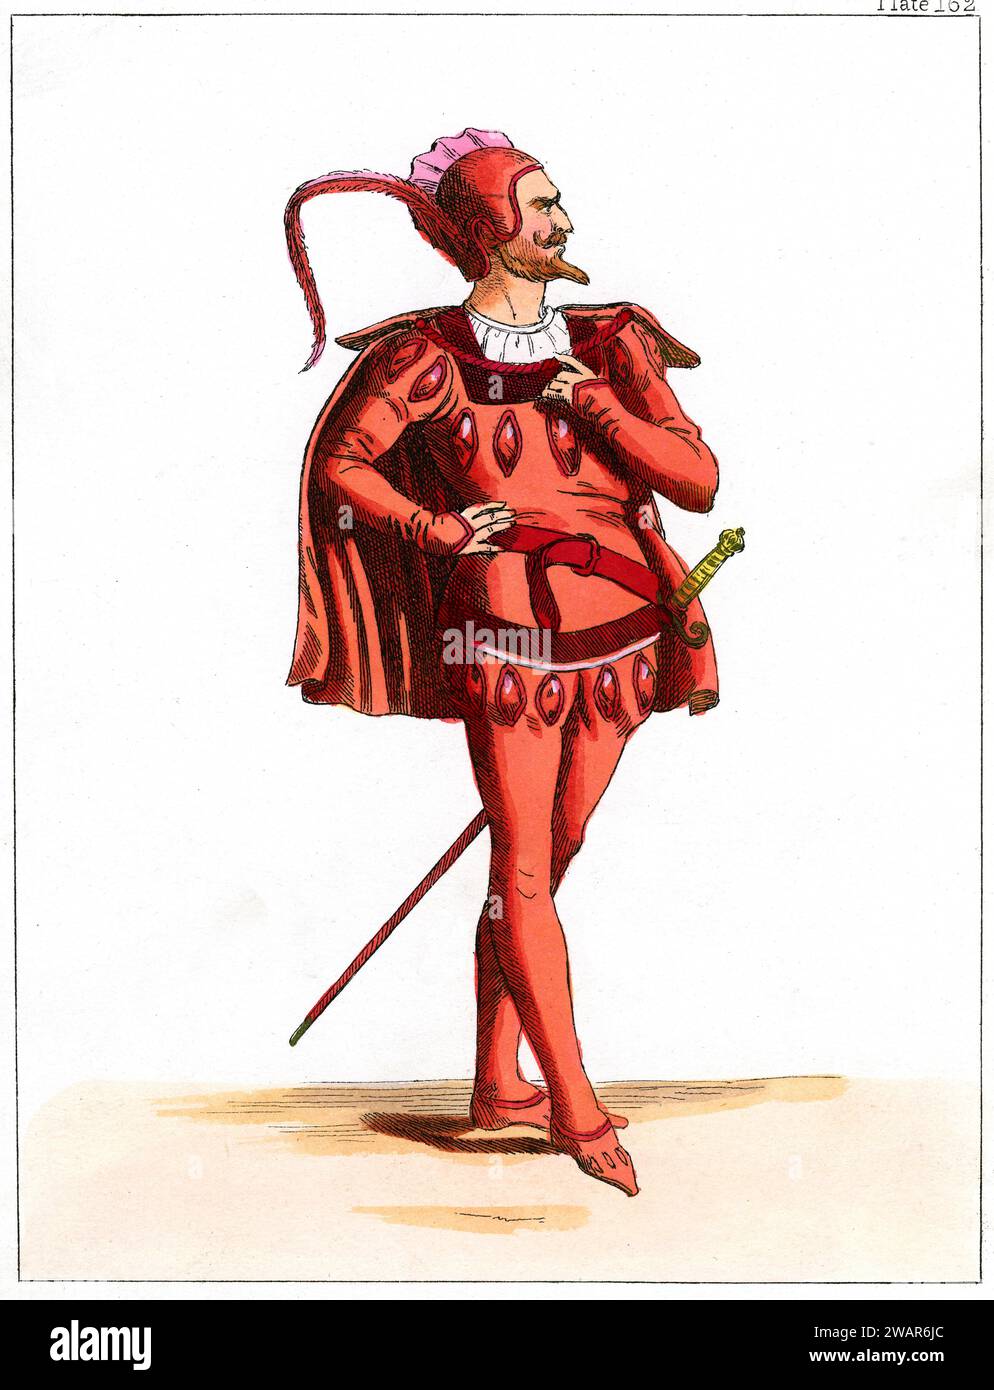 Mefistofele, noto anche come Mephisto, uno dei principali demoni della mitologia cristiana e del folklore tedesco, Satana o Diavolo, indossa il costume rosso Devilist. Incisione a colori c19th o illustrazione. Foto Stock